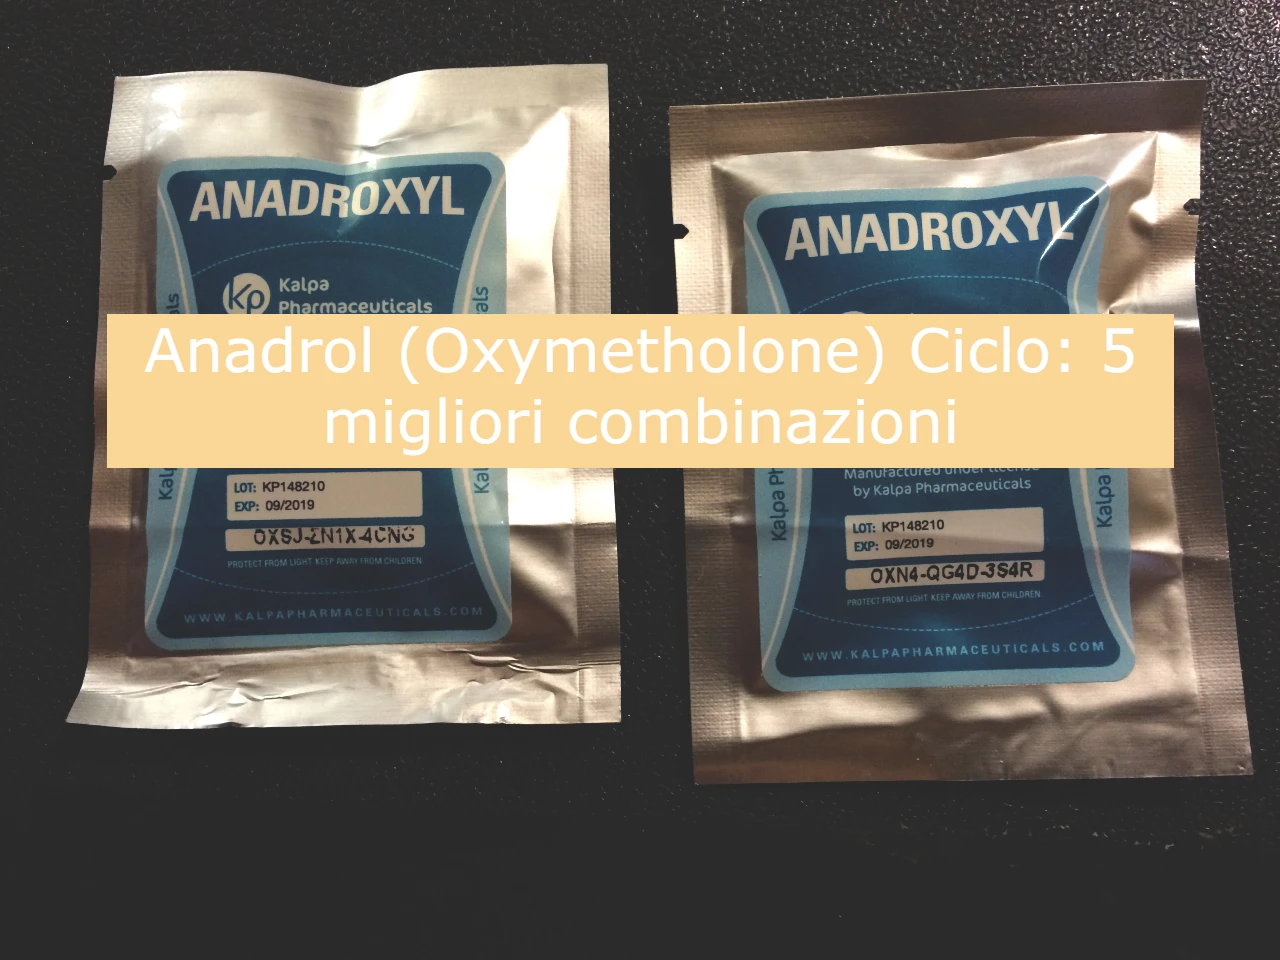 Anadrol (Oxymetholone) Ciclo - 5 migliori combinazioni